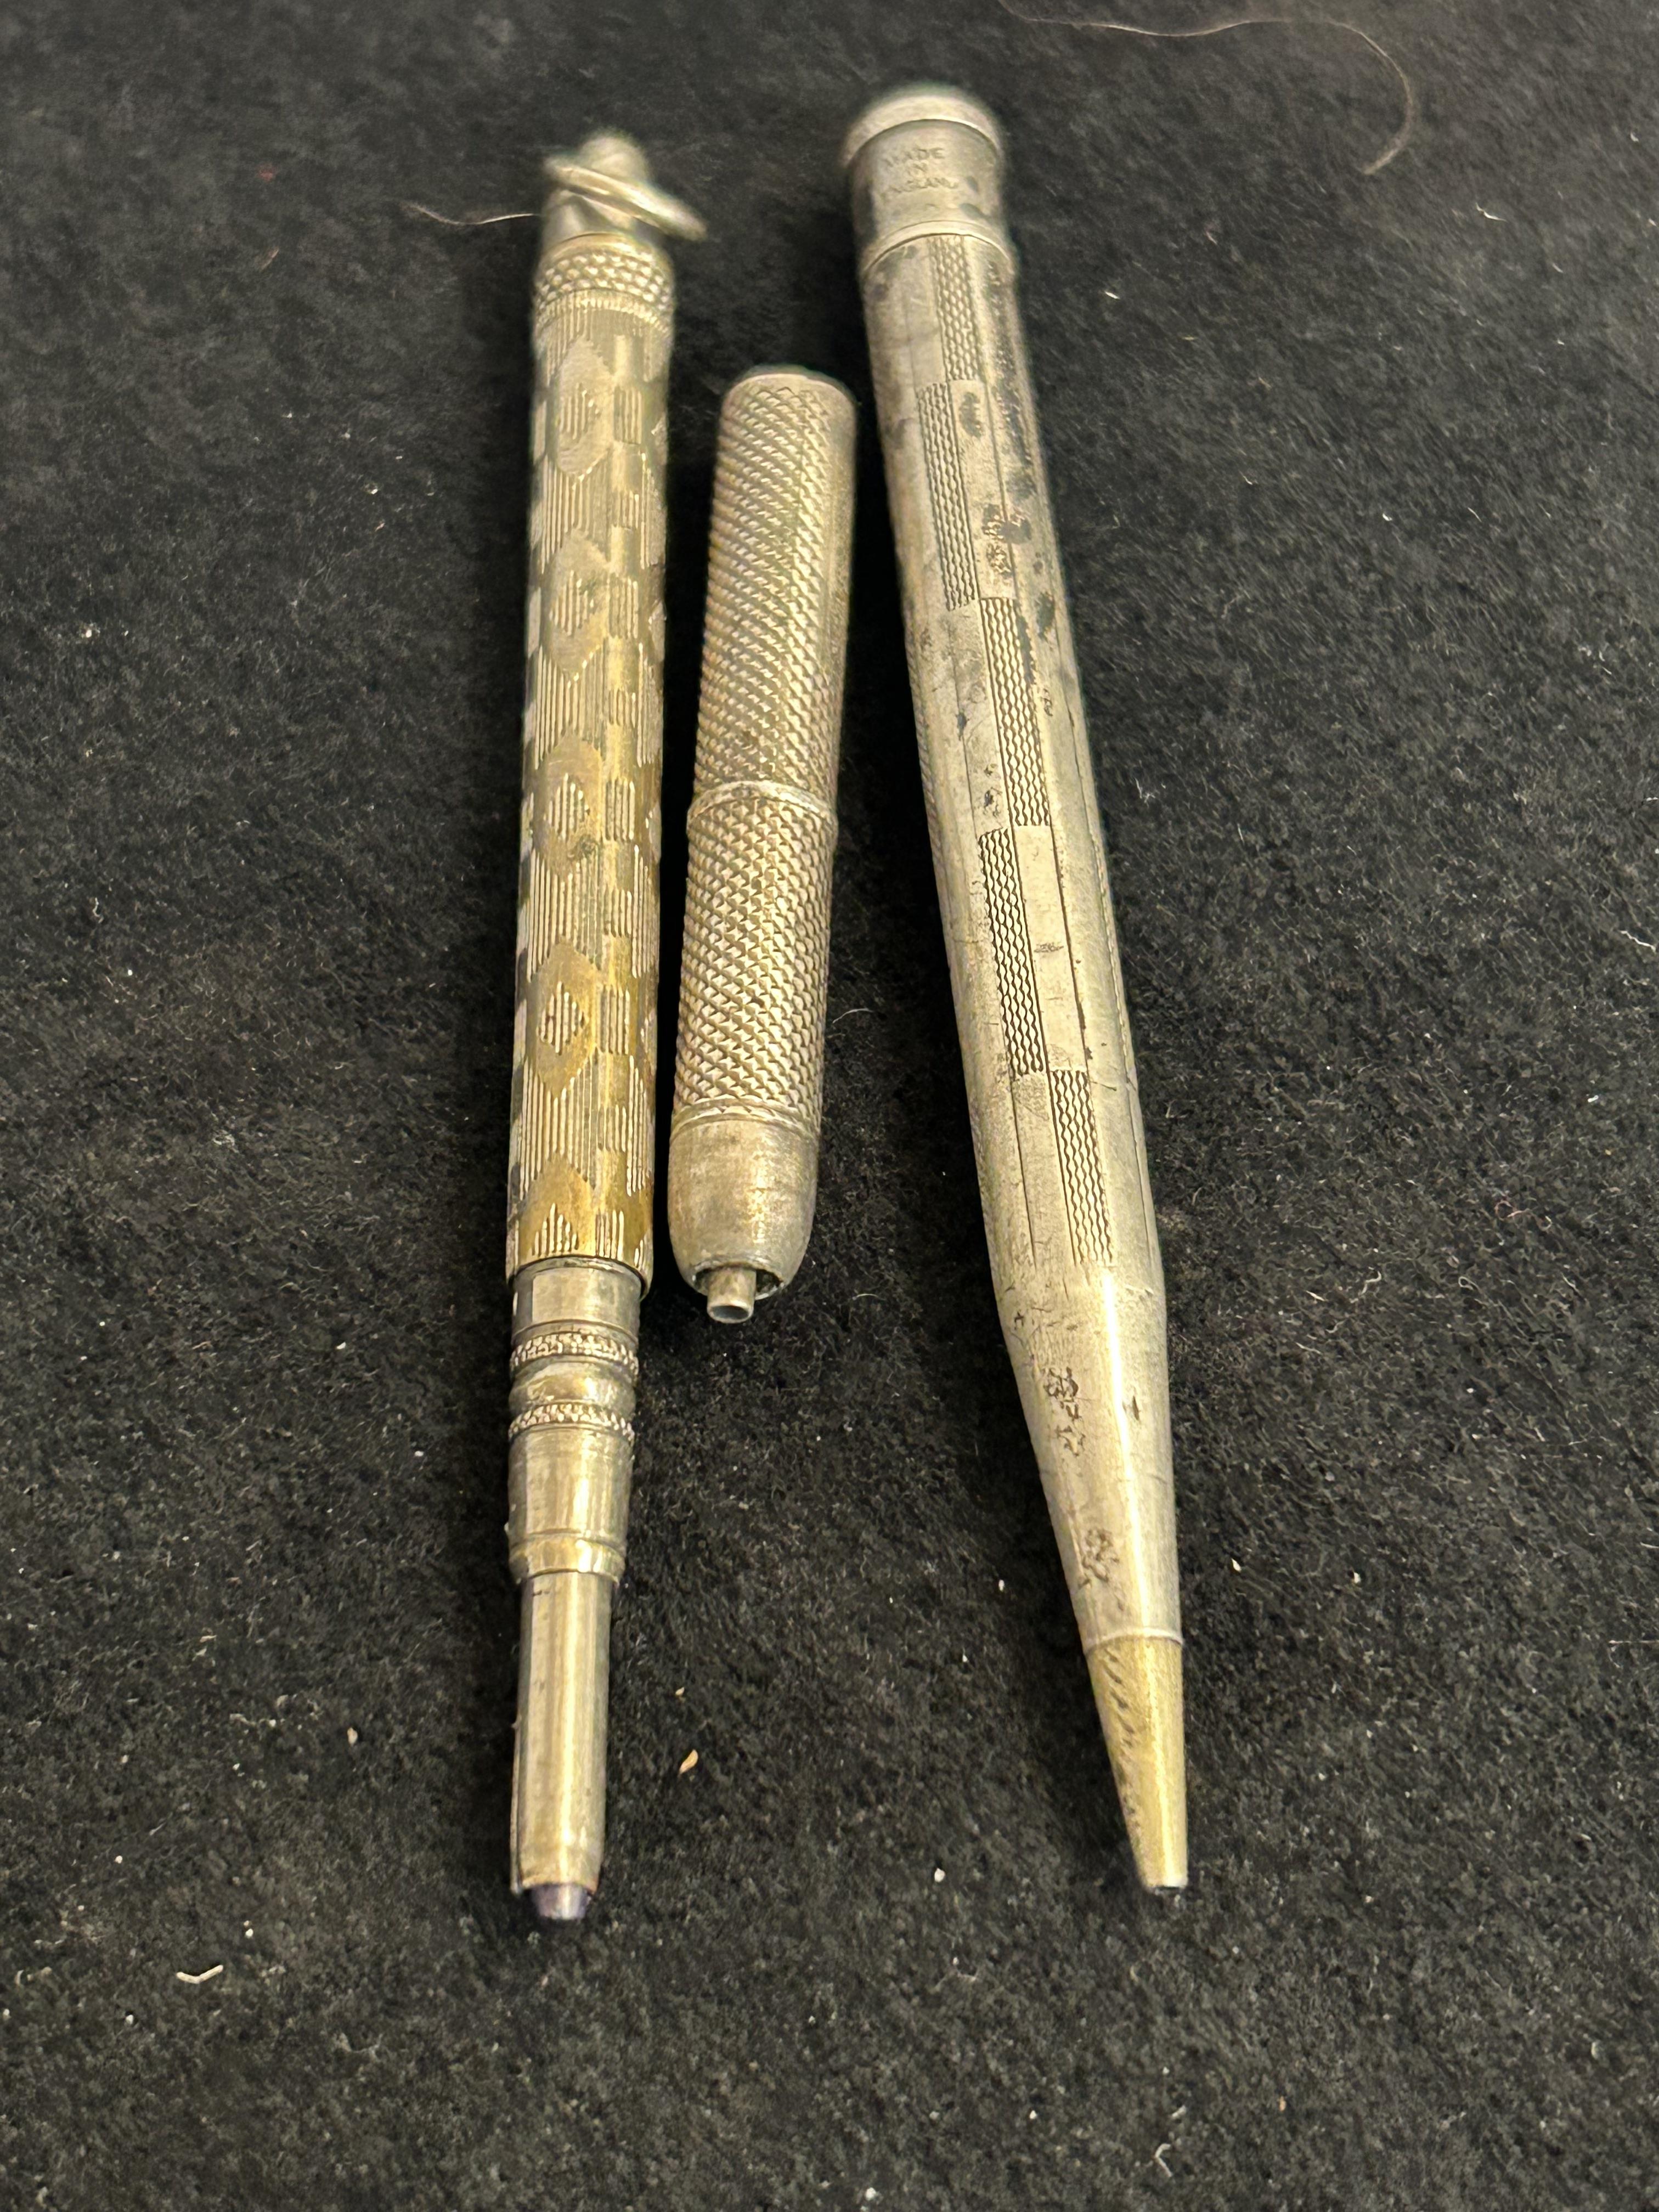 3 Silver pencils